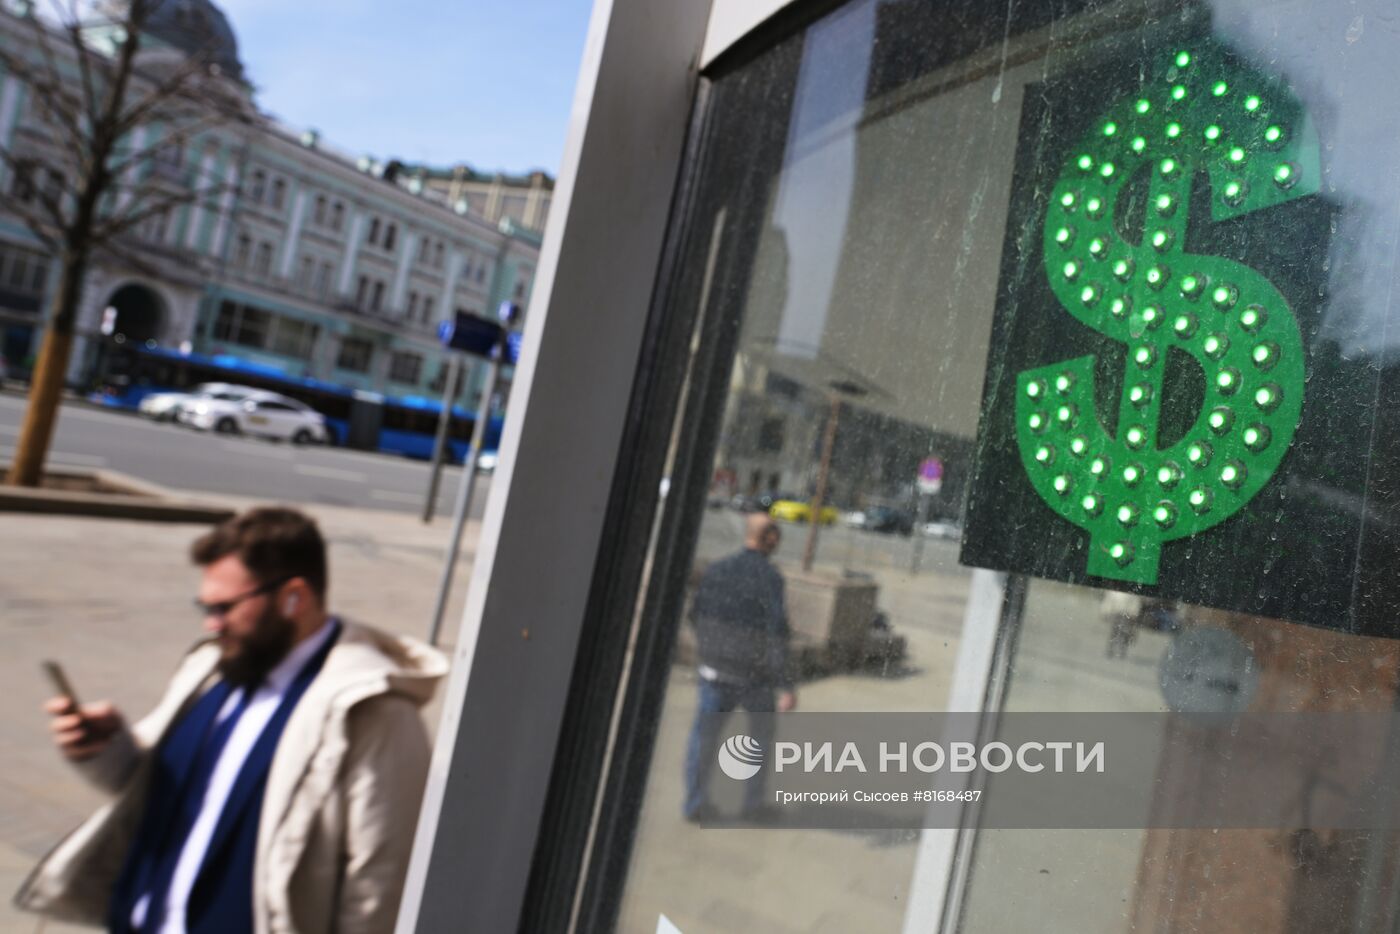 Продажа валюты в Москве 